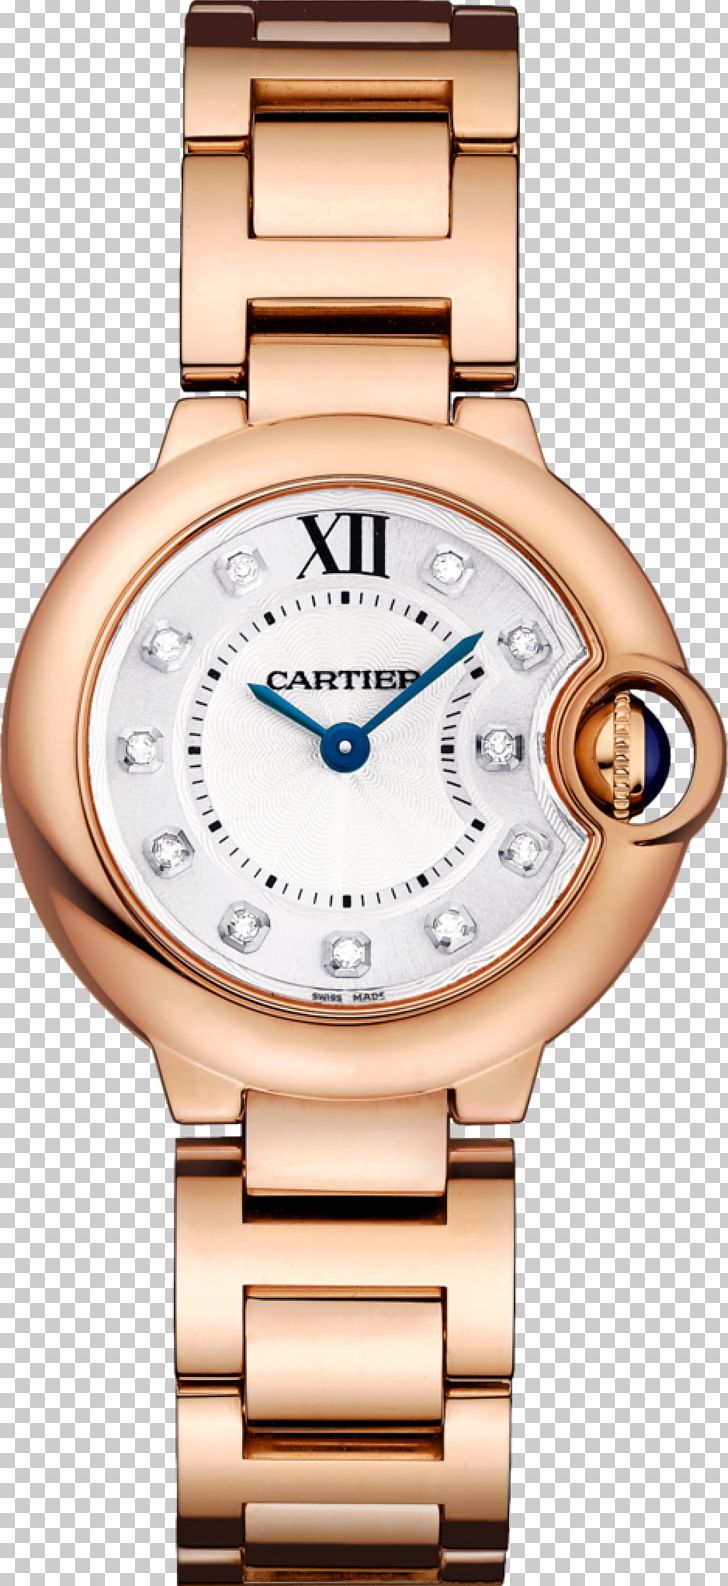 Cartier Ballon Bleu Fifth Avenue Watch Jewellery PNG, Clipart, Accessories, Ballon, Bleu, Bracelet, Brand Free PNG Download